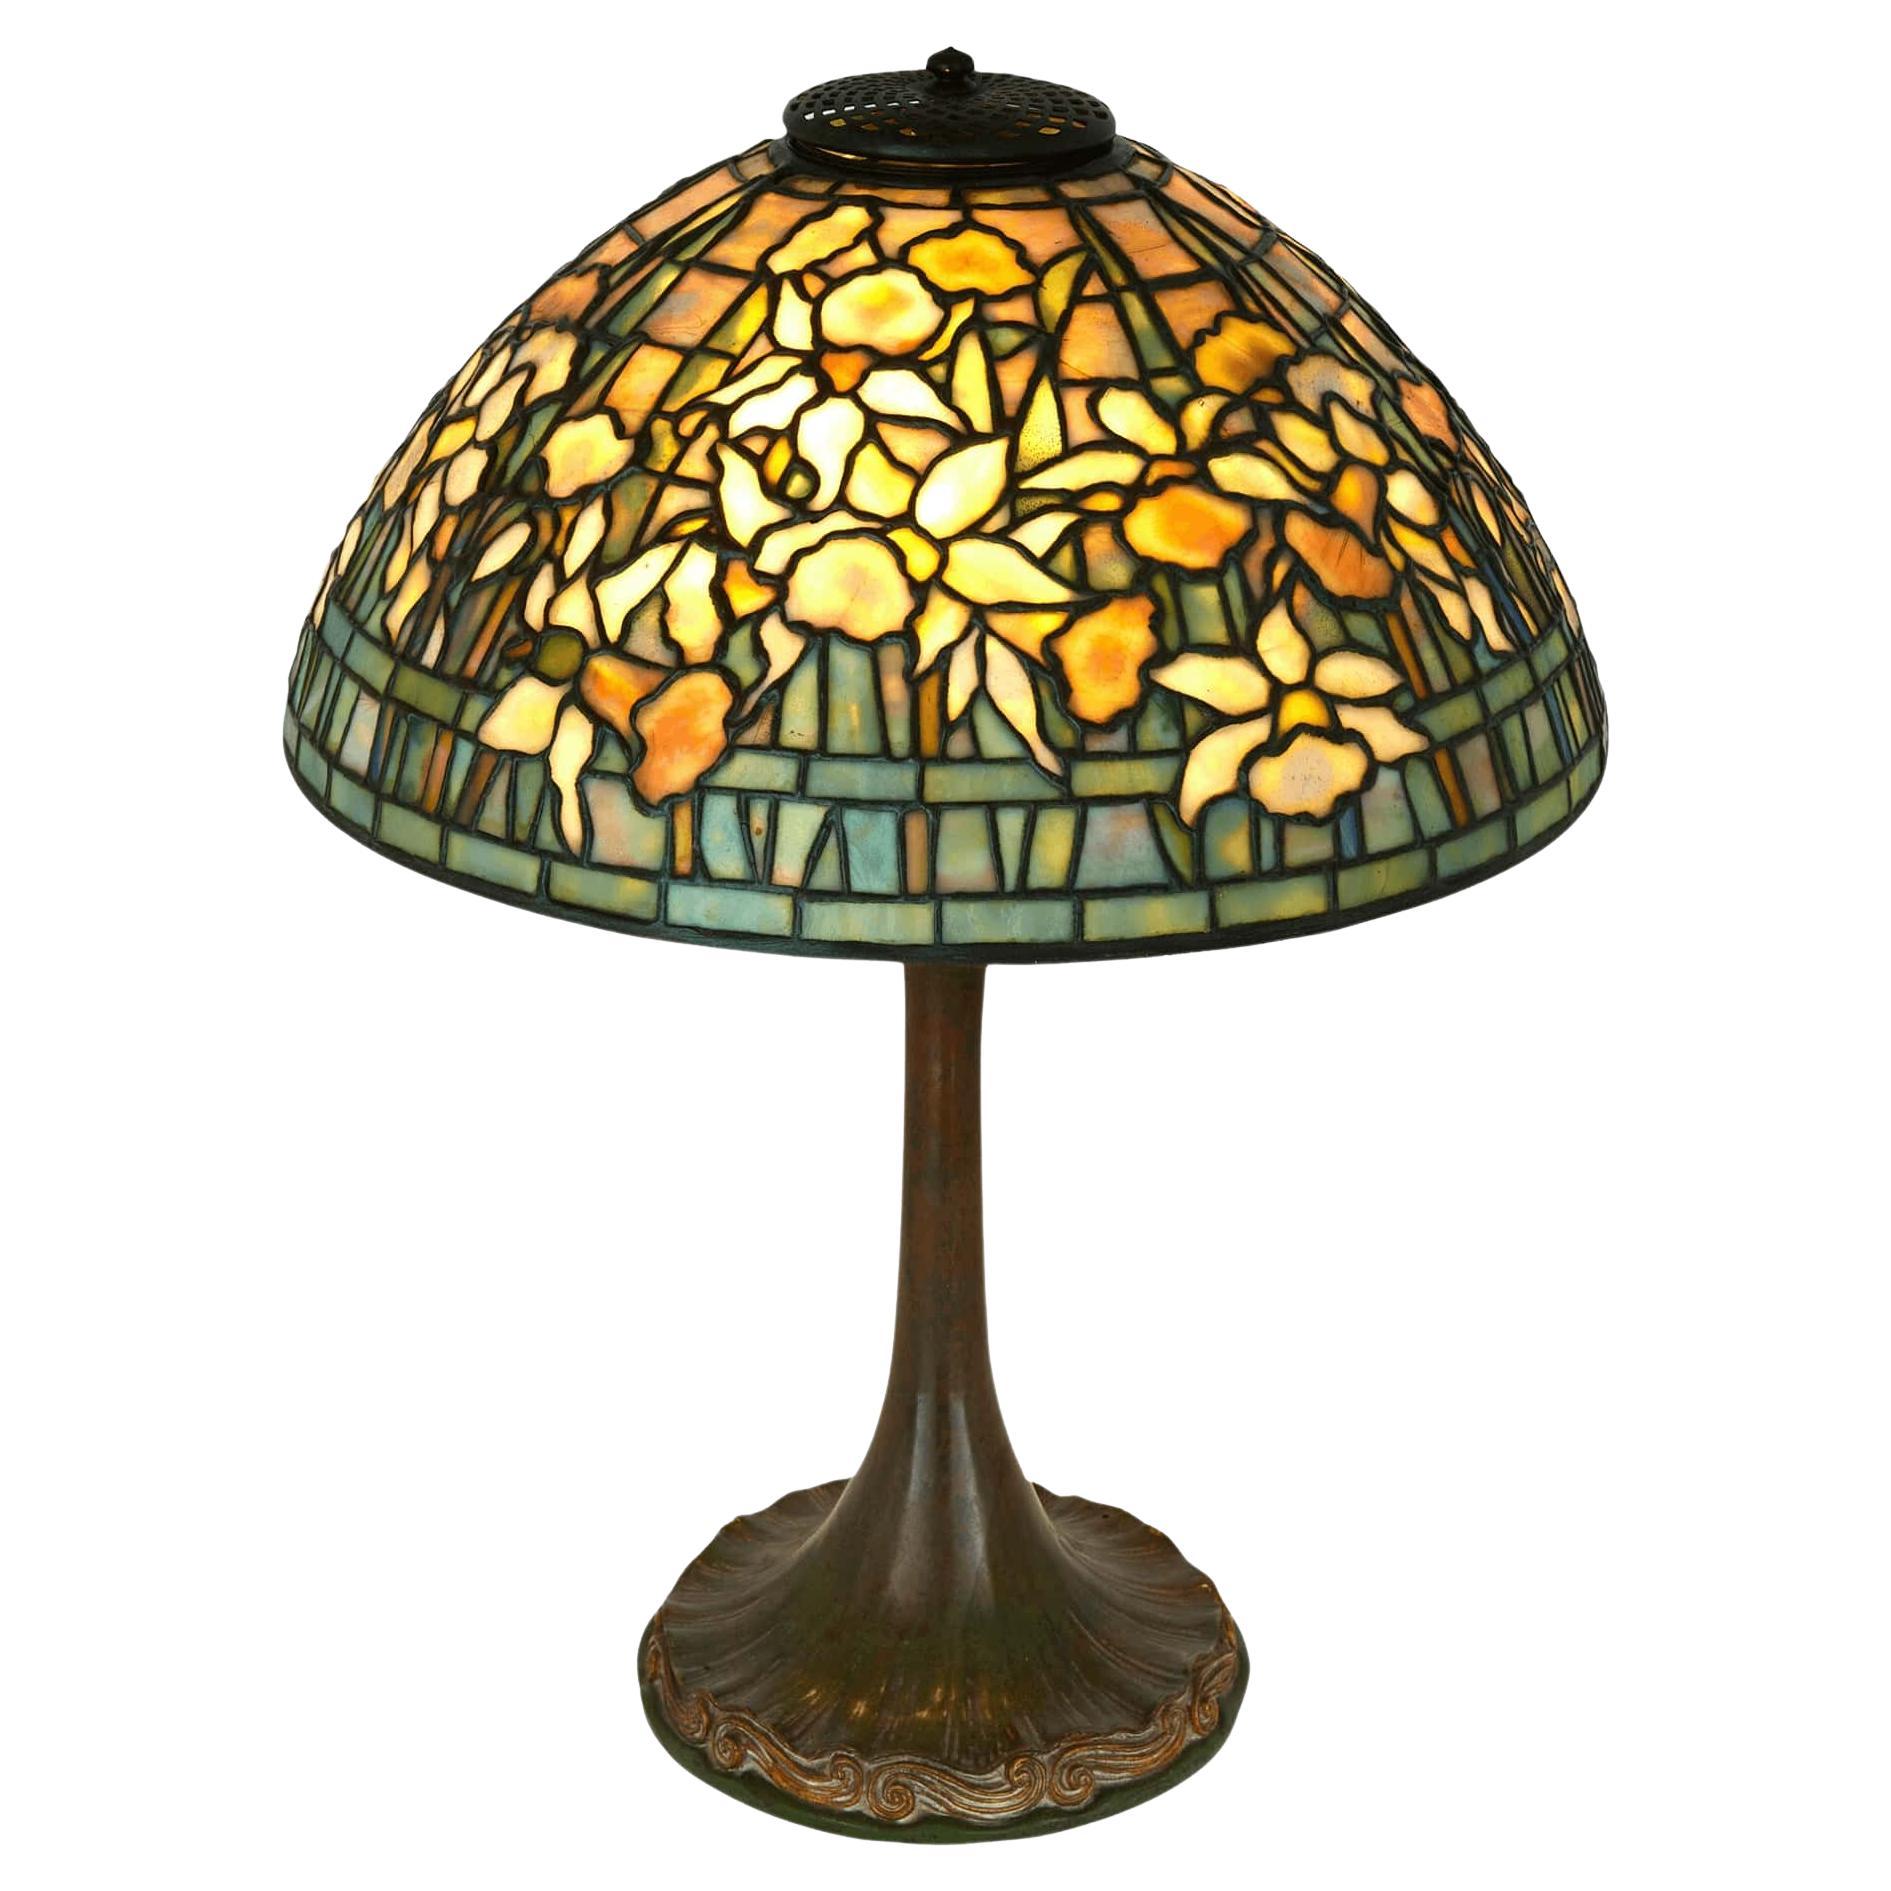 'Daffodil' Table Lamp by Tiffany Studios